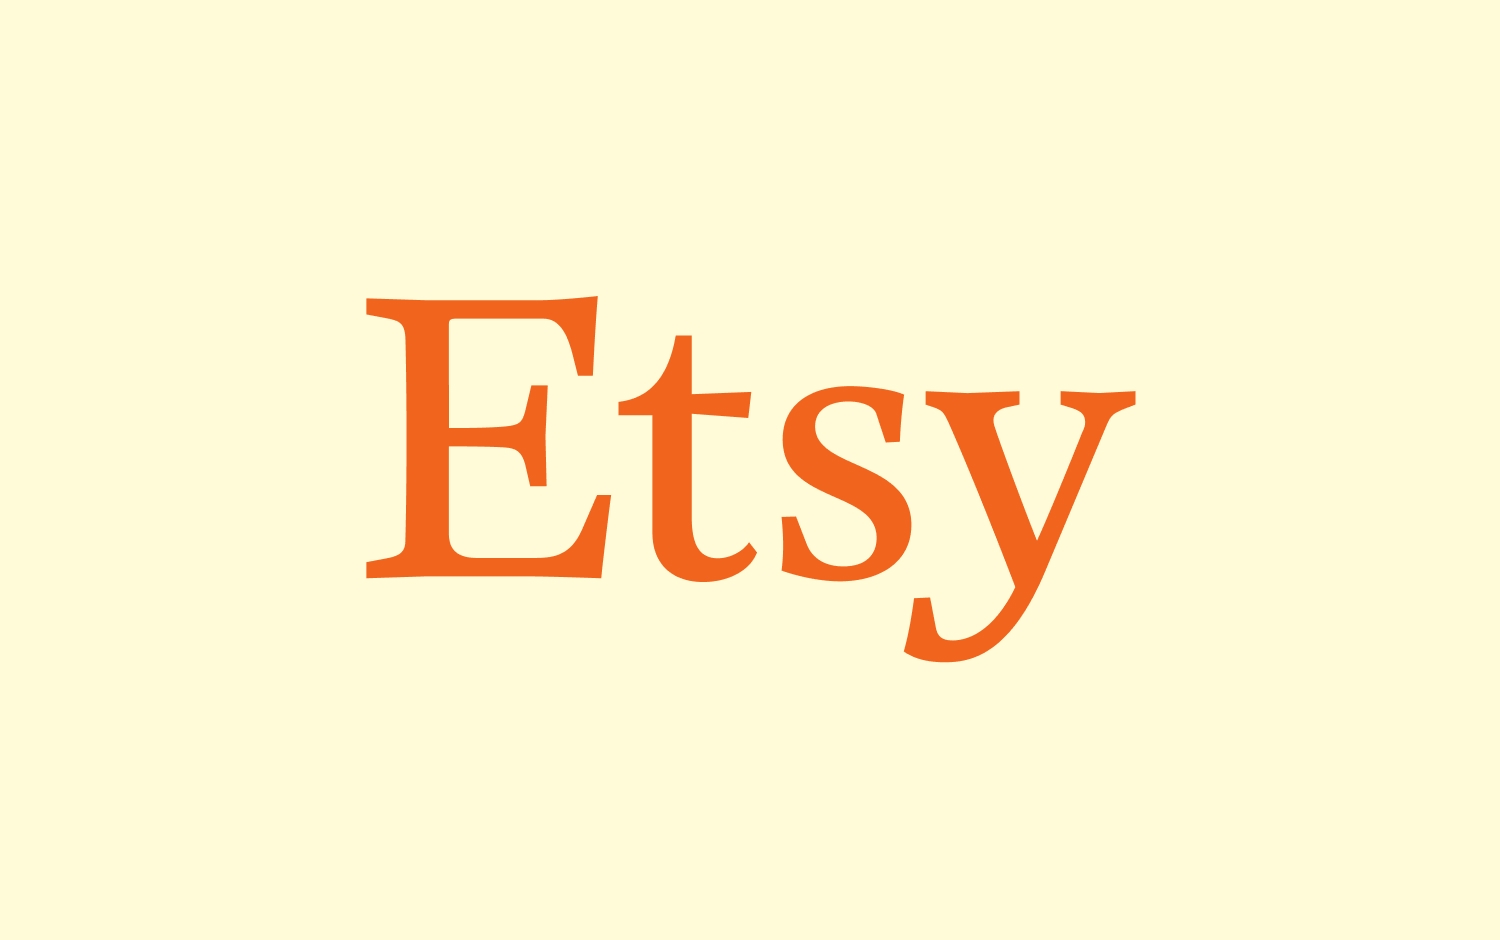 クリーム色の背景にオレンジ色フォントの Etsy ロゴ